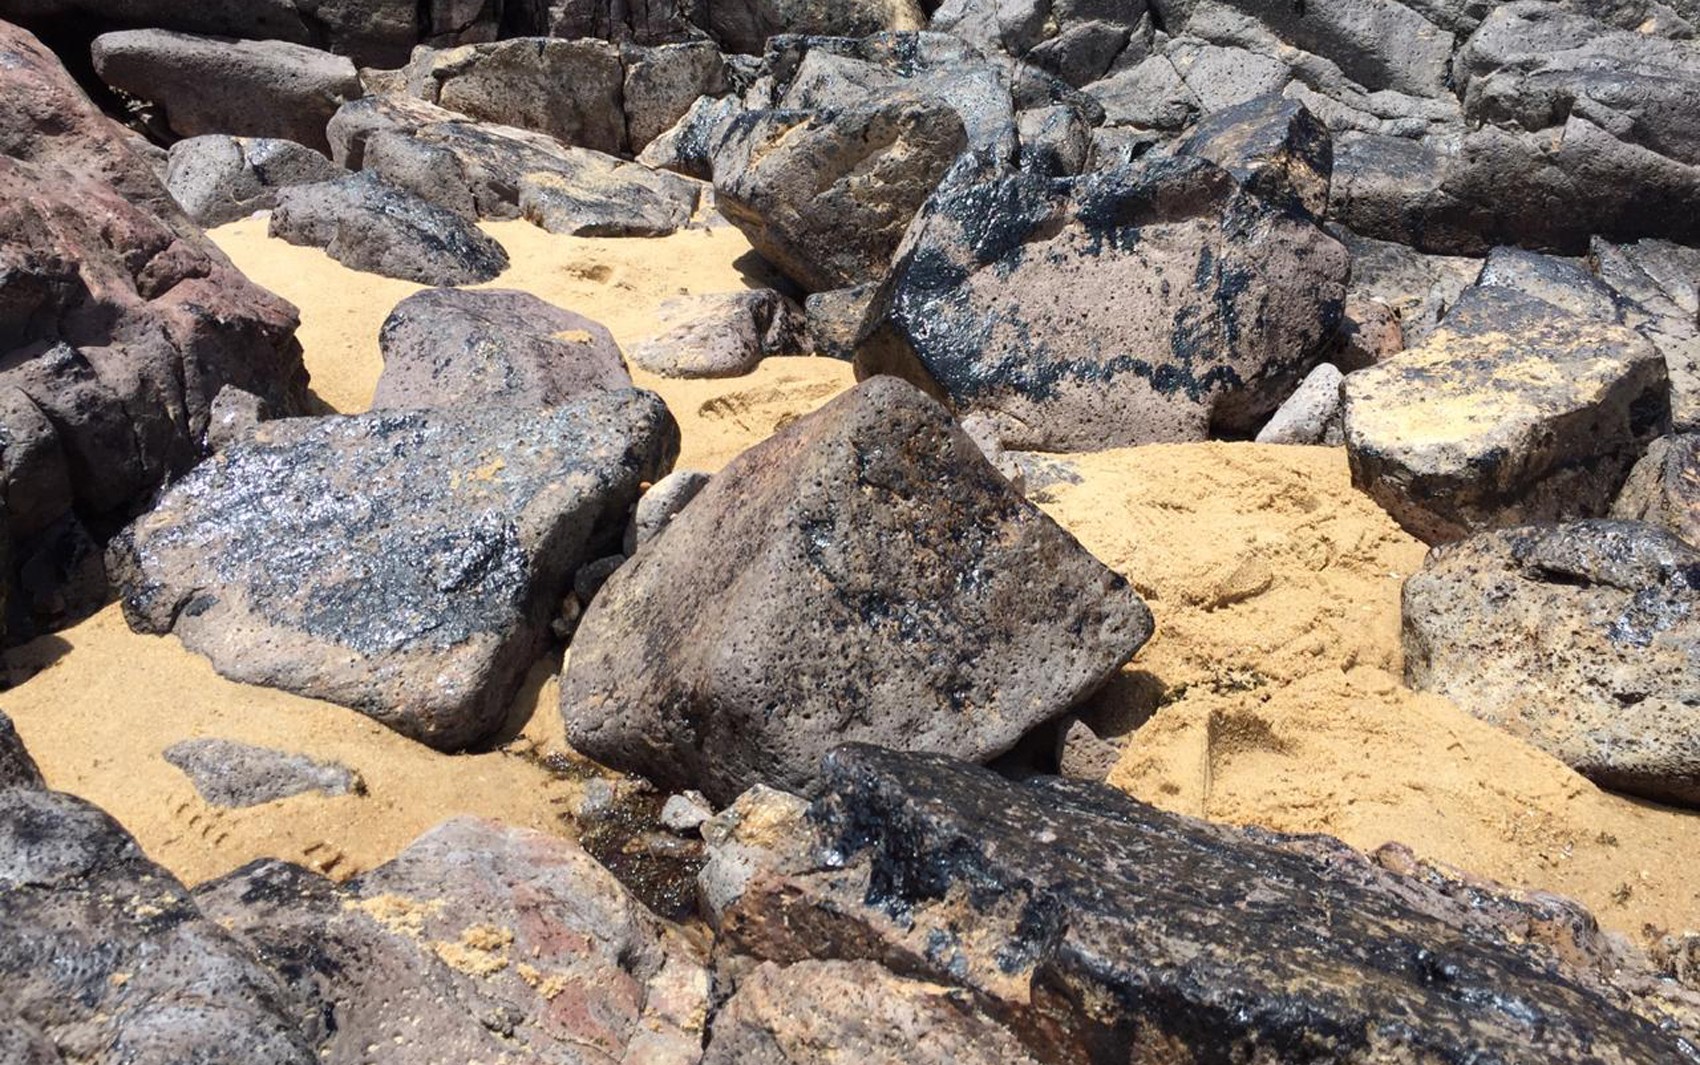 Cinco meses após primeira aparição, fragmentos de óleo ainda são encontrados em praias de Pernambuco thumbnail